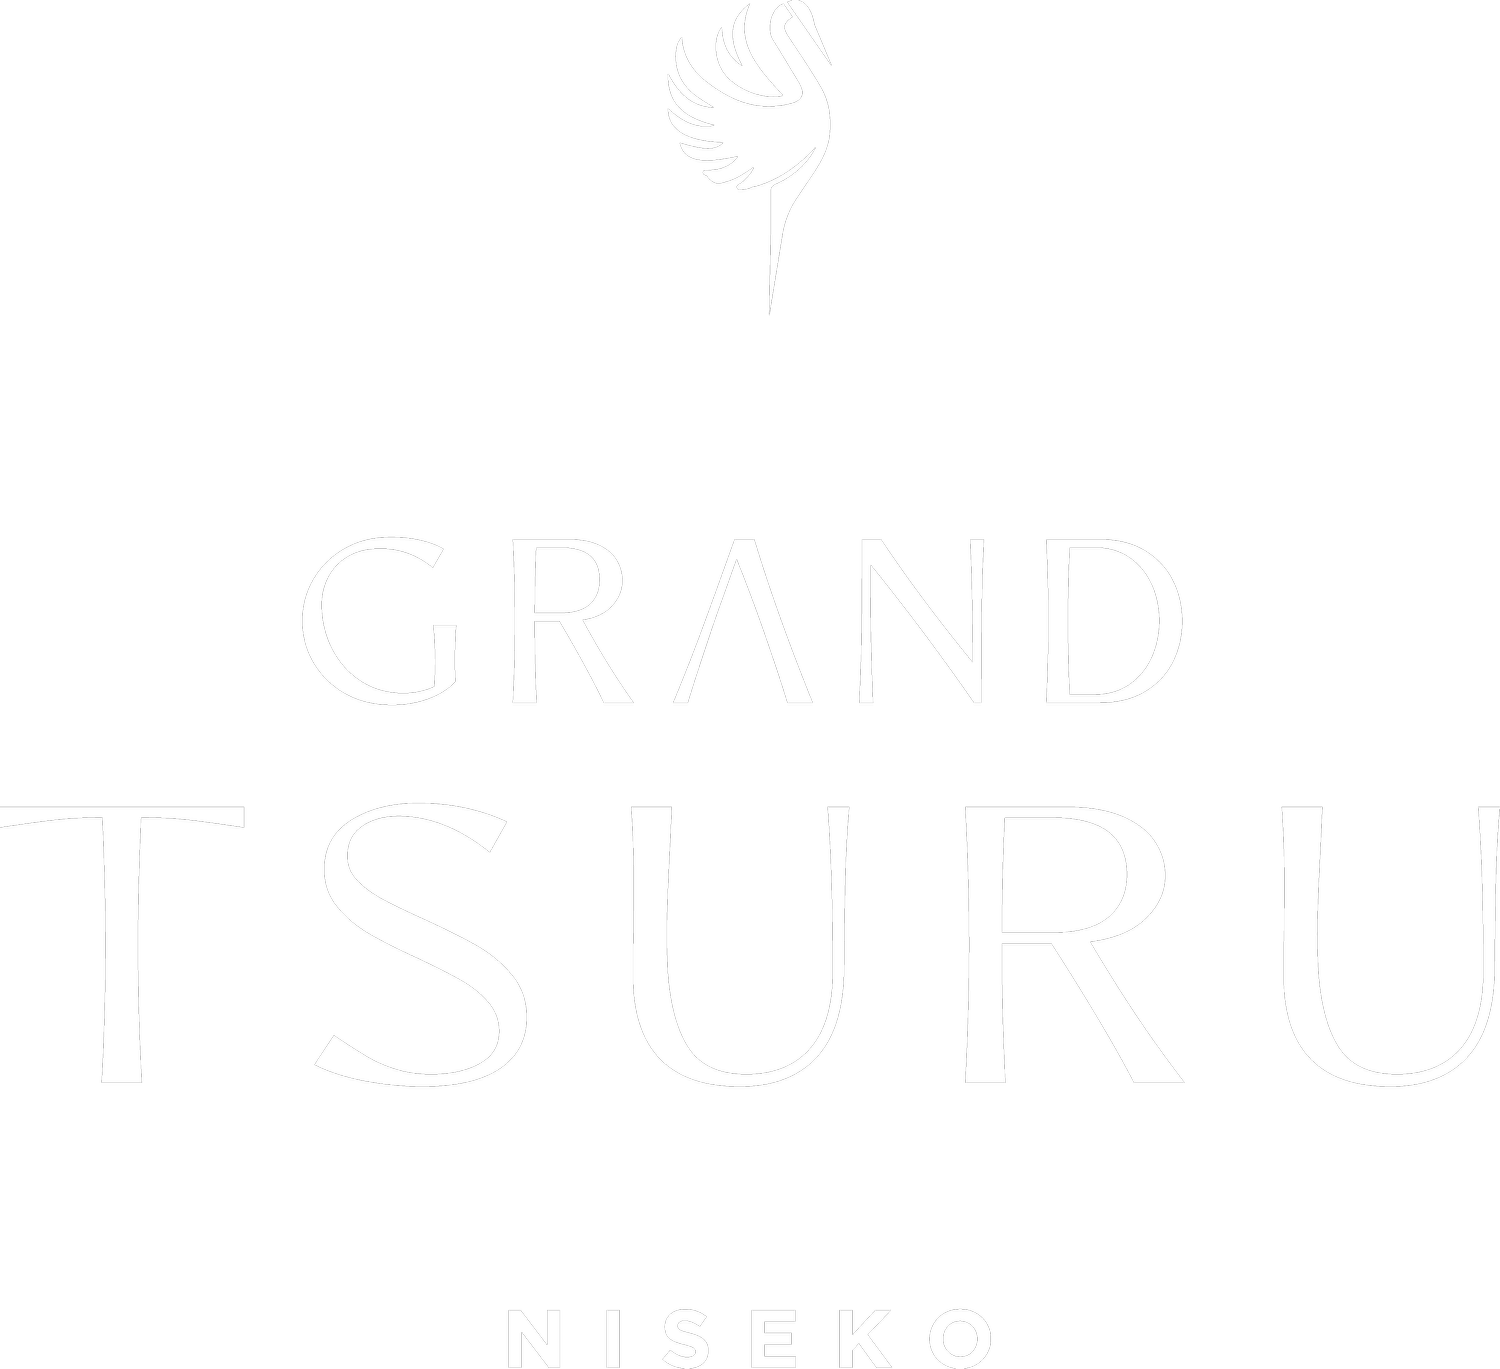 Grand Tsuru